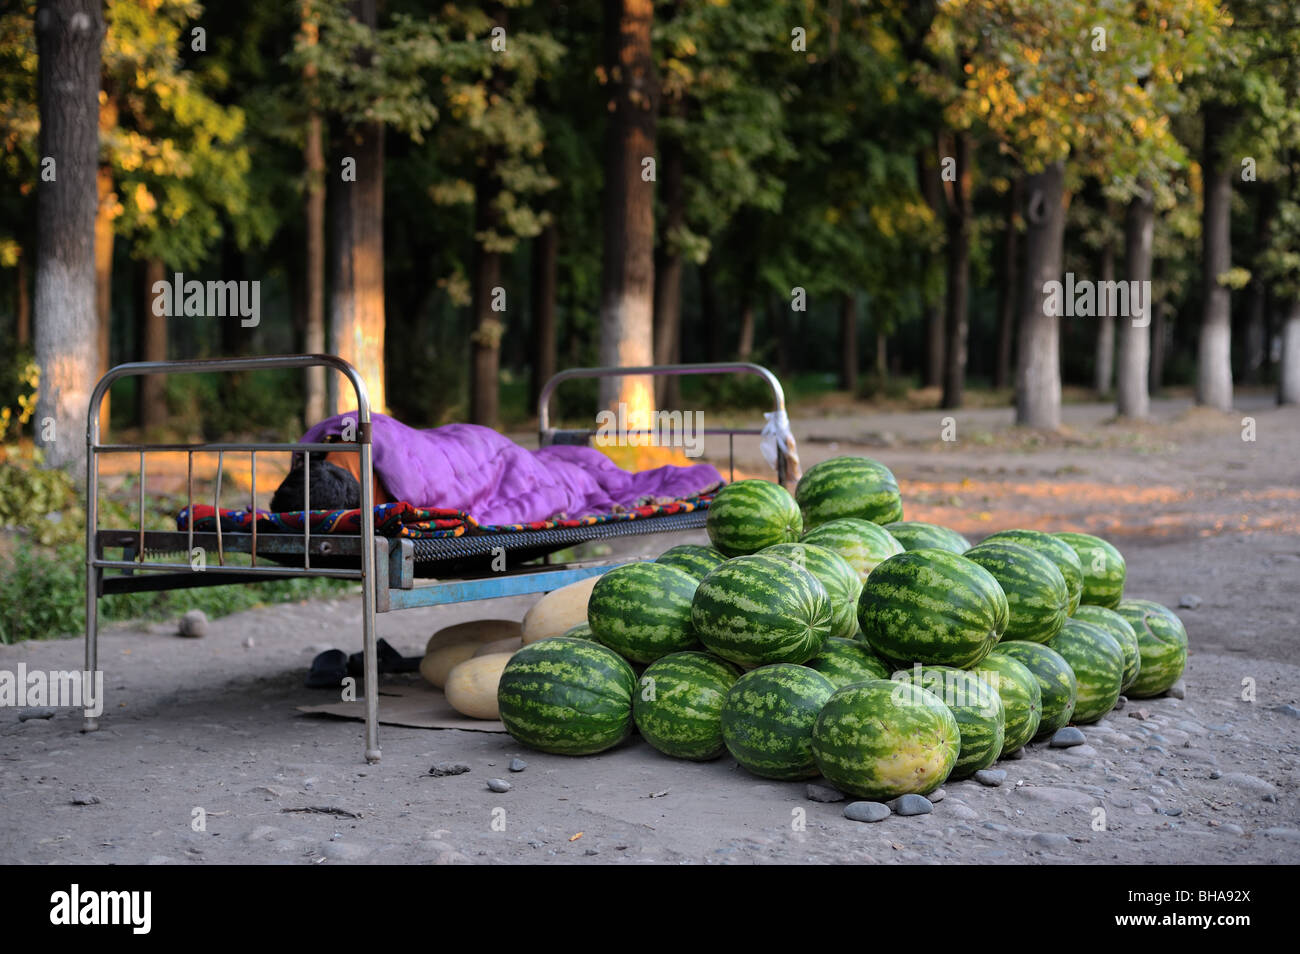 Wassermelonen-Verkäufer schlafen neben dem Produkt in Bischkek. Stockfoto